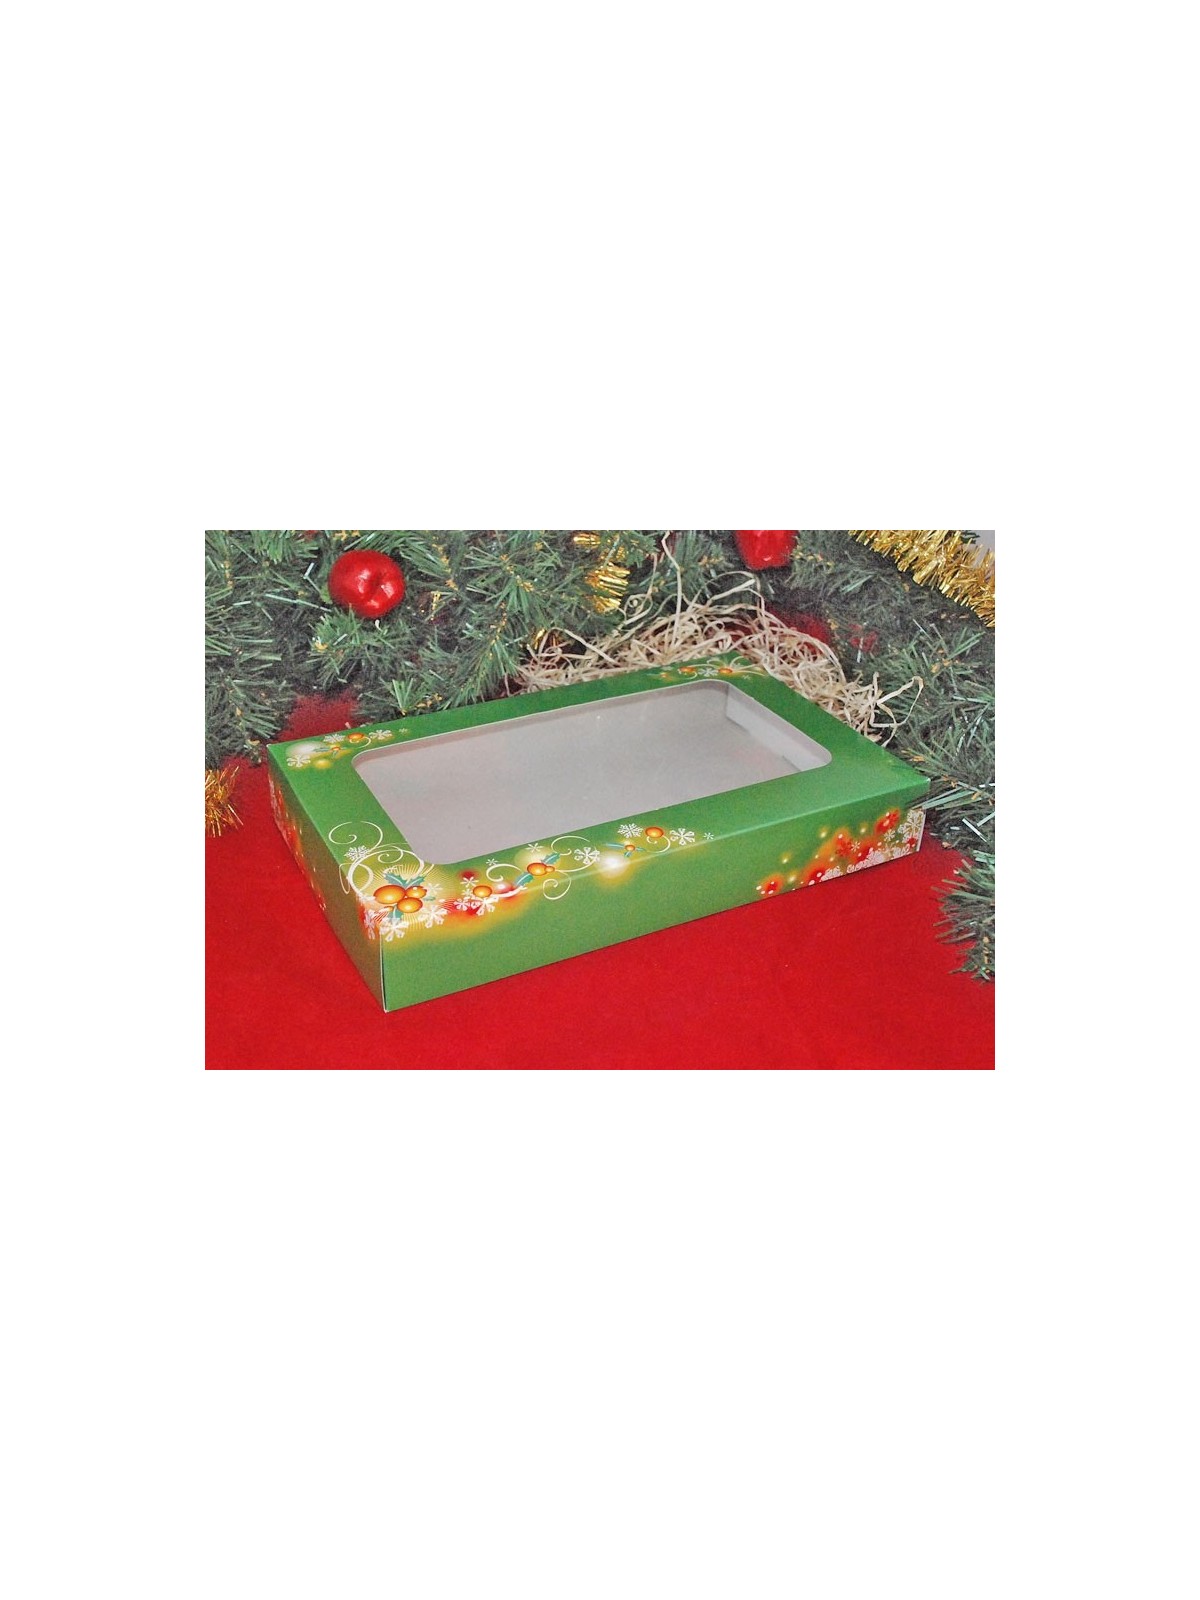 Boxen für Weihnachtsgebäck - Weihnachten Grün - 1/2kg